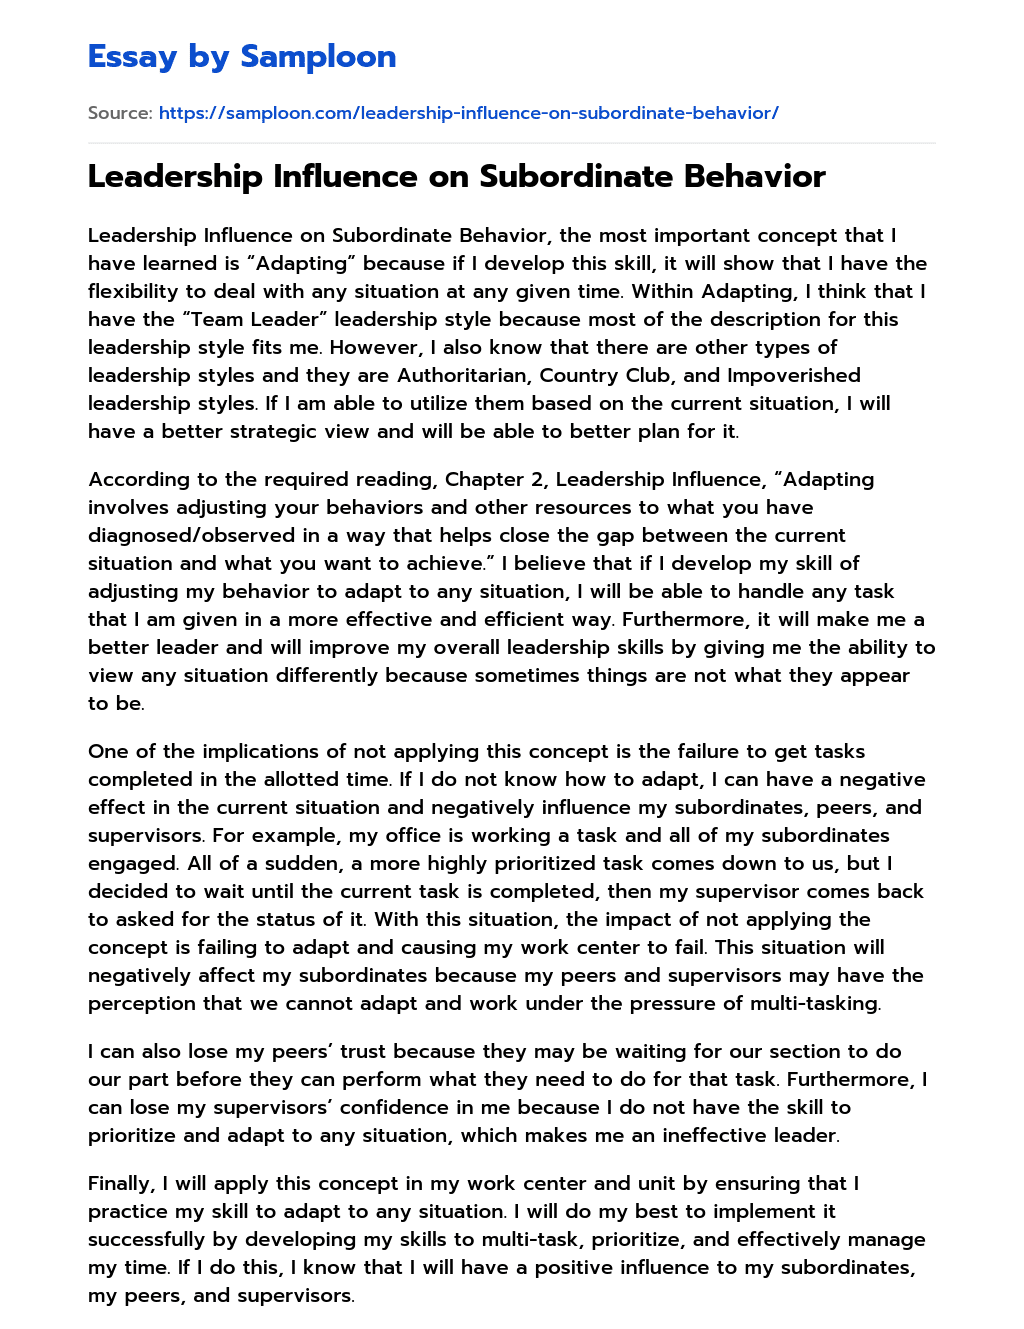 Leadership Influence on Subordinate Behavior essay